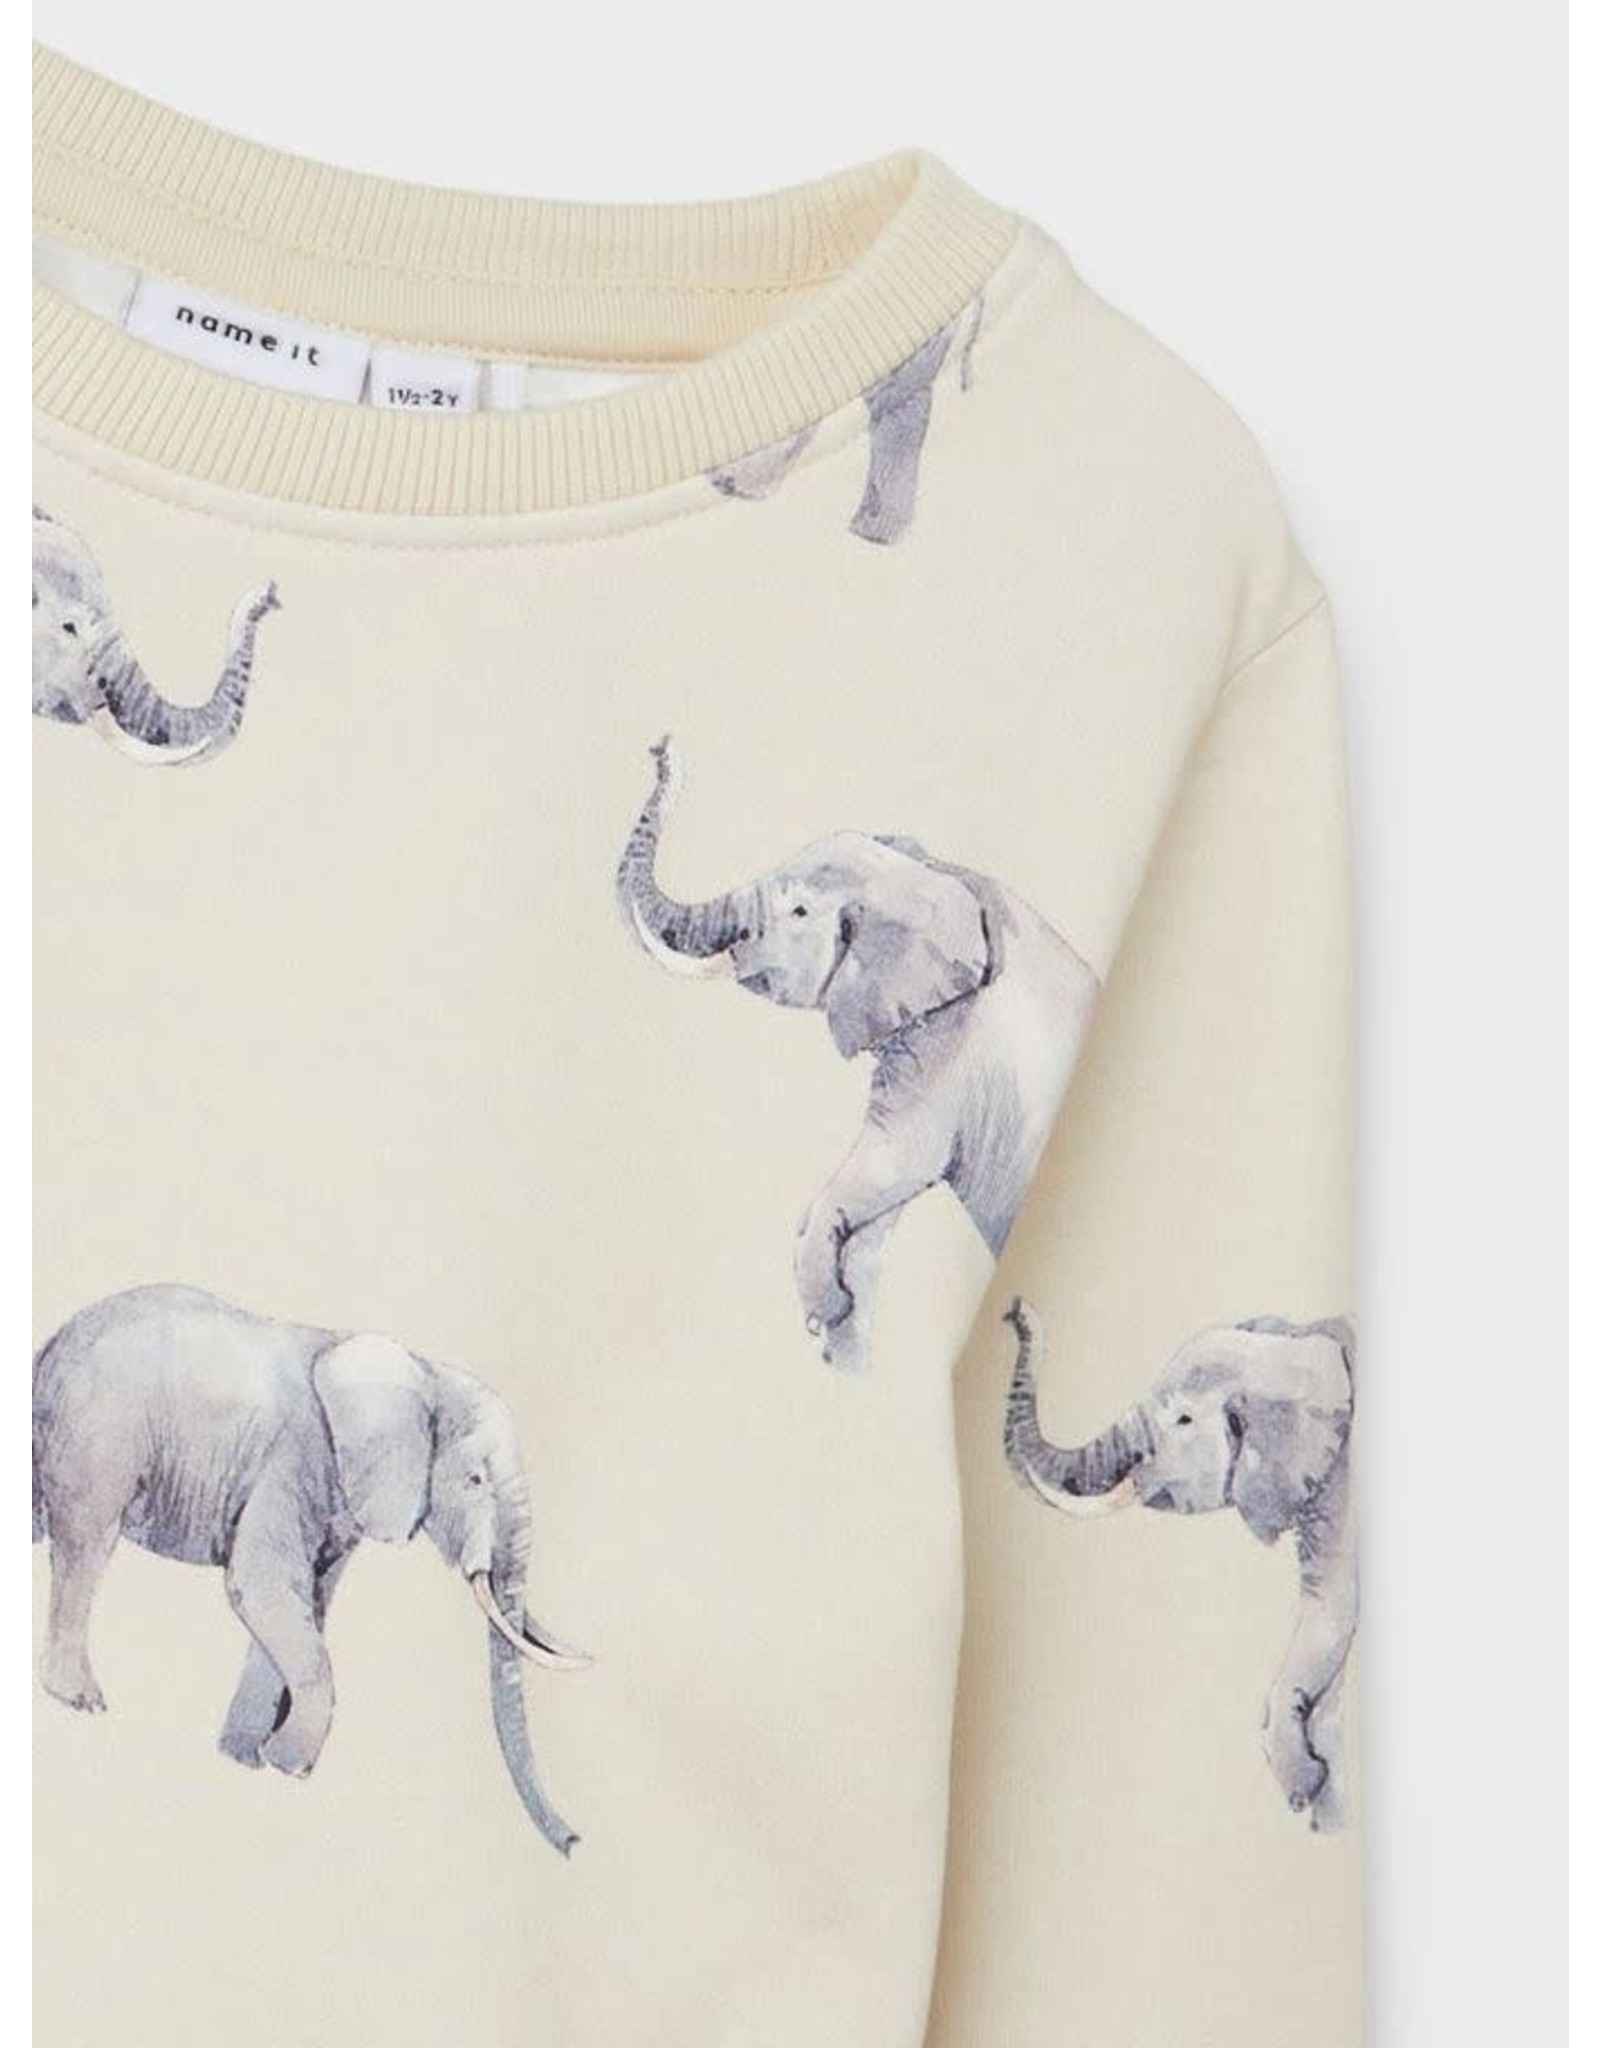 Name It Beige trui met all over print van olifanten